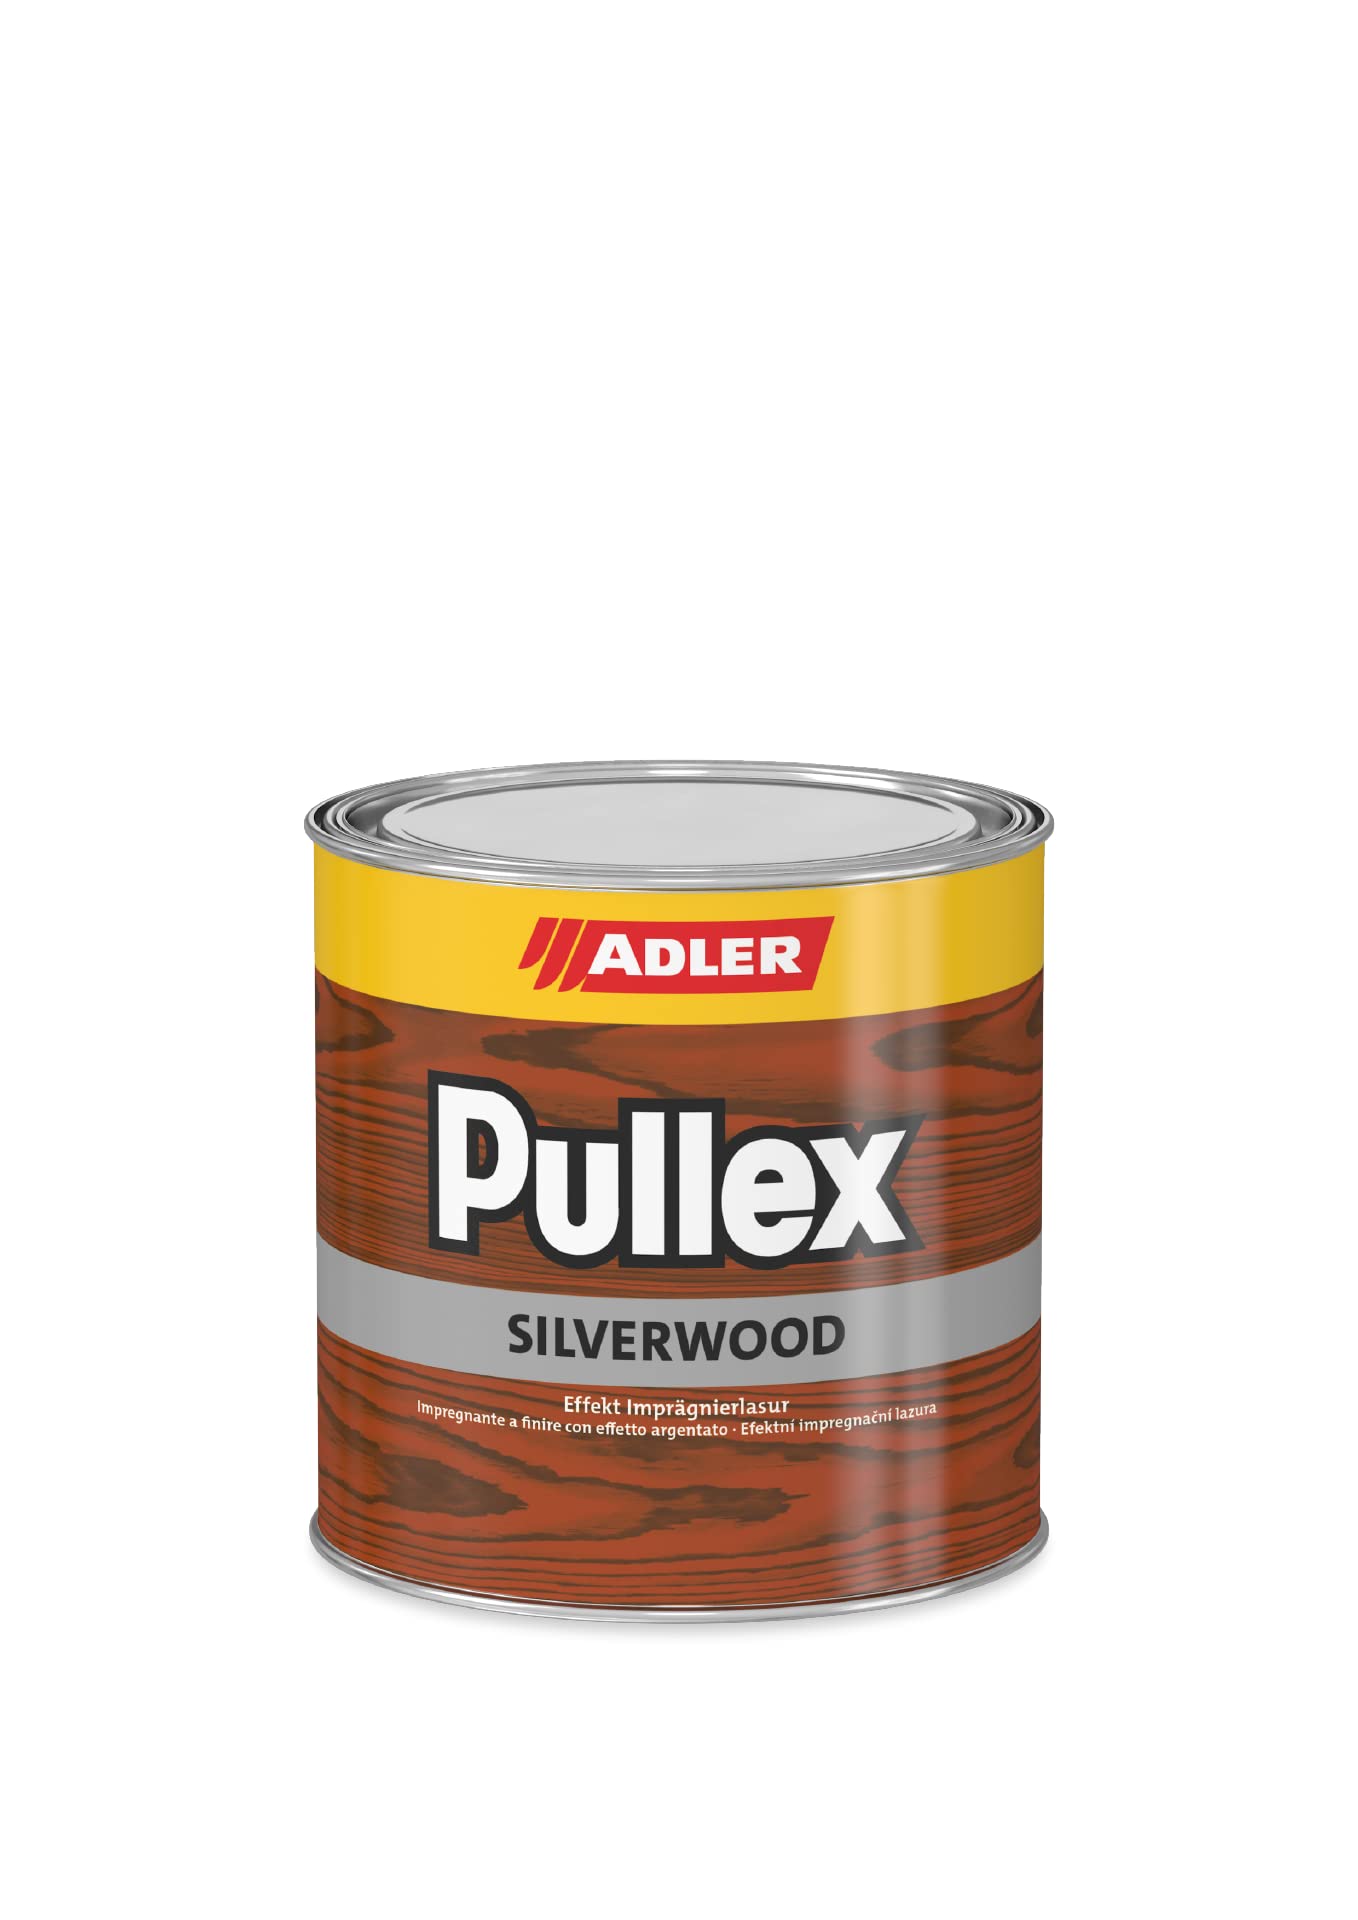 ADLER Pullex Silverwood - Effekt Imprägnierlasur & Holz Grundierung - Farbige Holzlasur Außen als effektiver Wetterschutz mit speziellen Metalleffektcharakter - Holzschutzlasur Farbe: Farblos 5 l